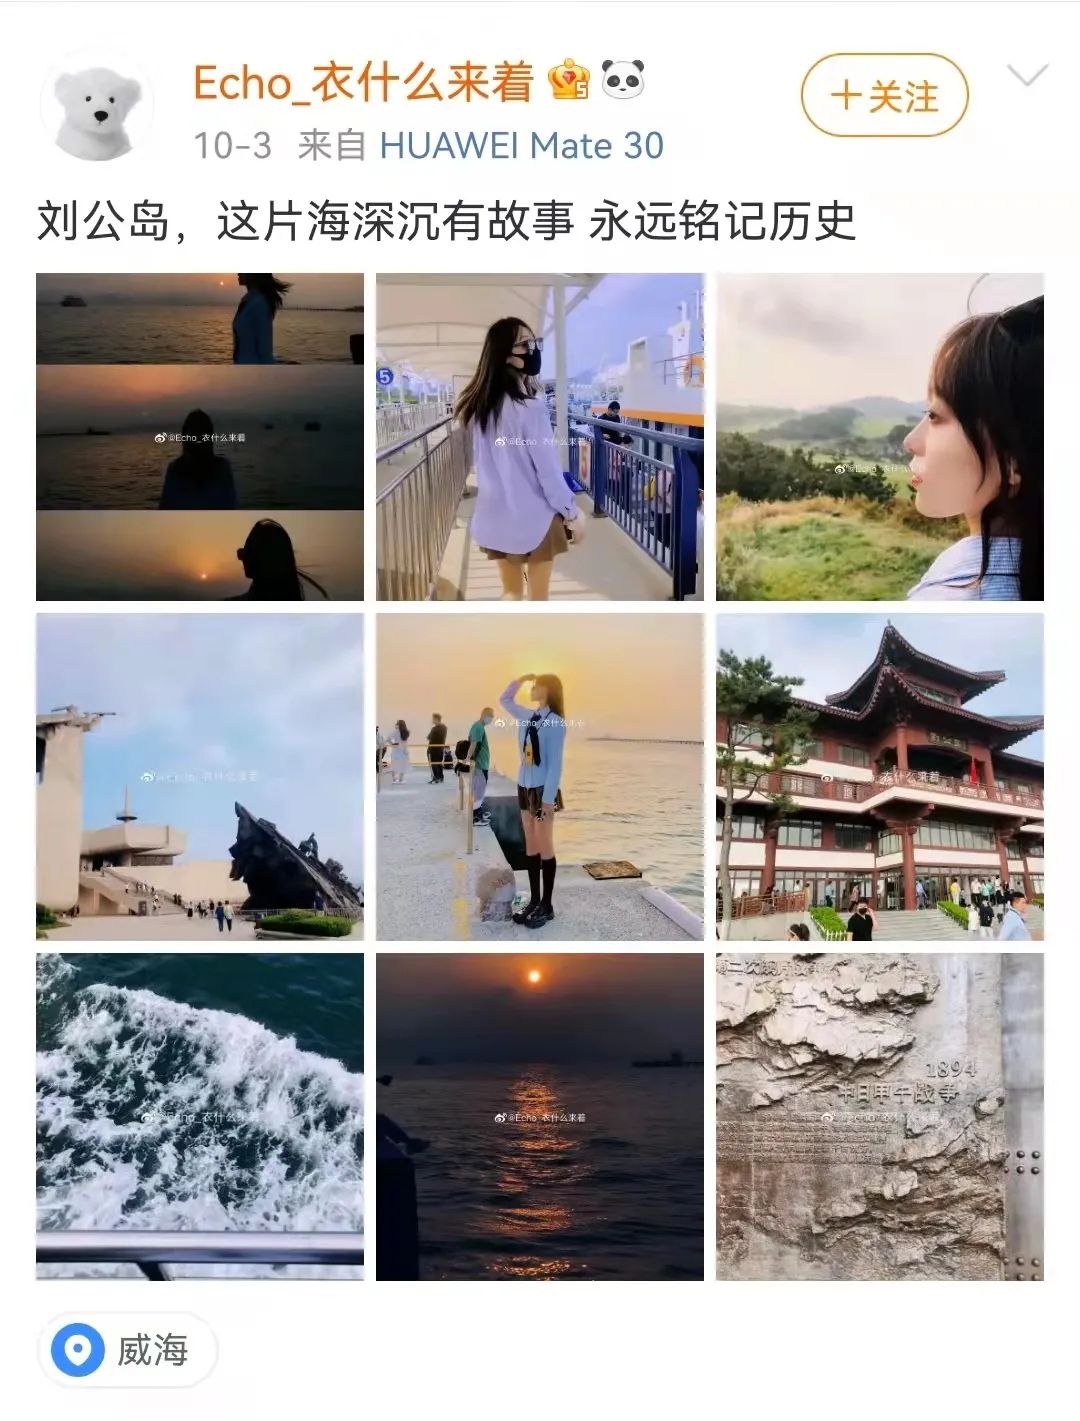 威海刘公岛上榜“2021国庆假期山东省TOP10热门景区”